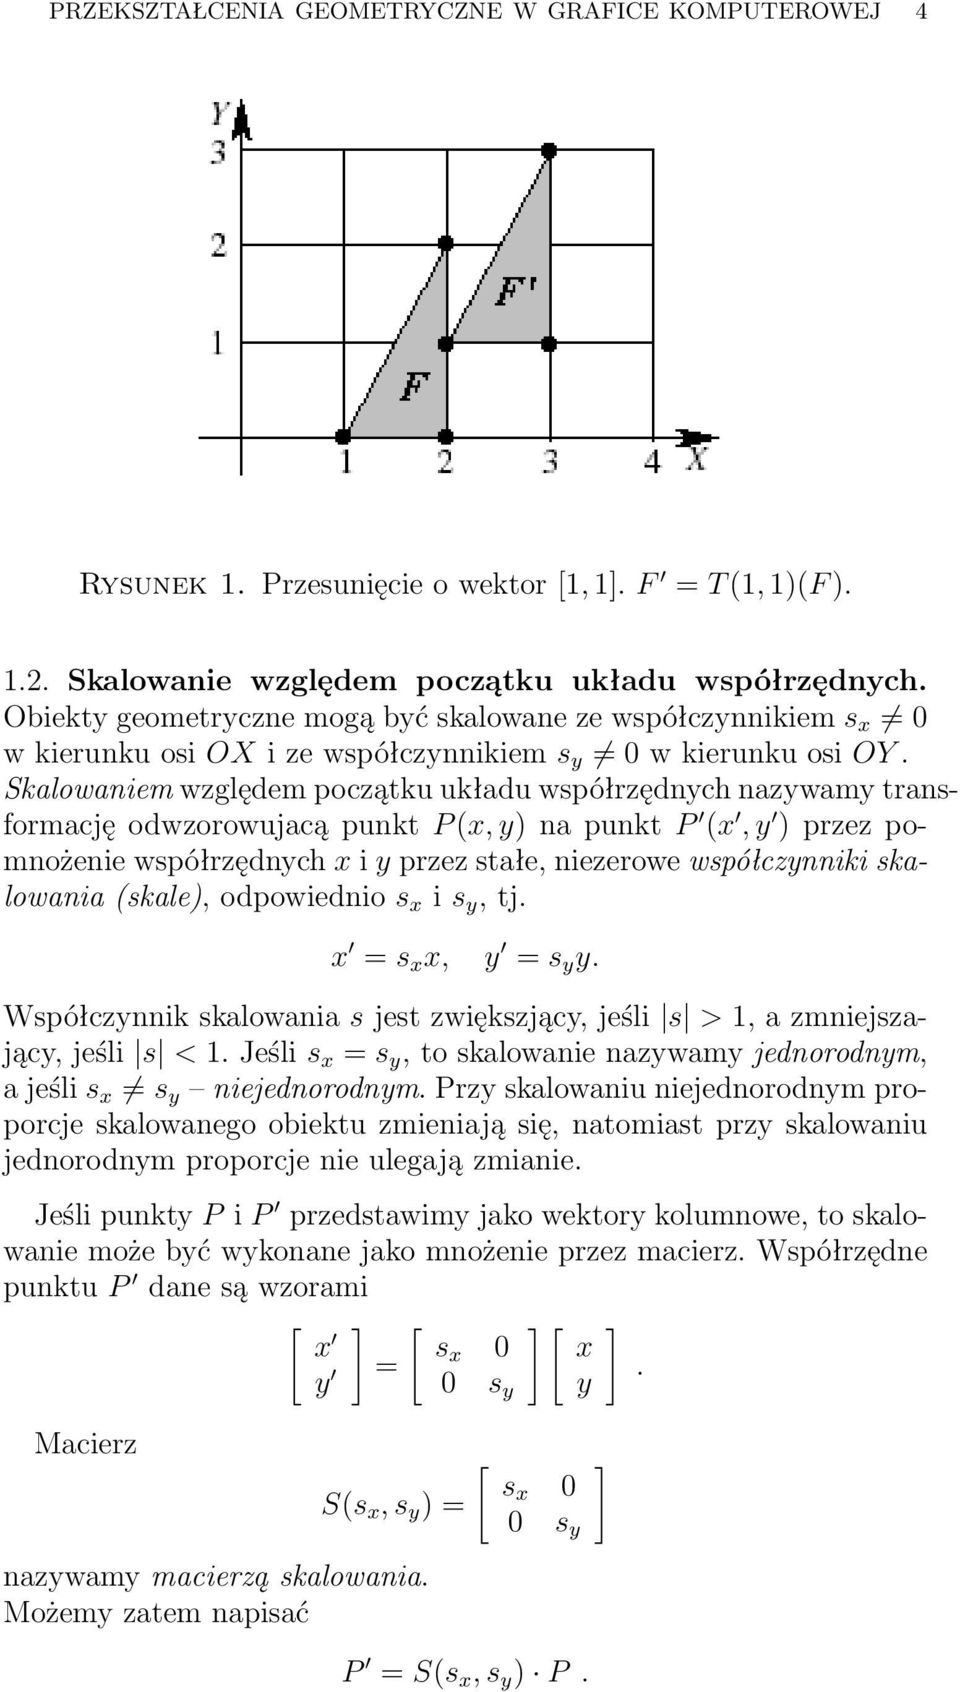 Skalowaniem względem początku układu współrzędnych nazywamy transformację odwzorowujacą punkt P (, y) na punkt P (, y ) przez pomnożenie współrzędnych i y przez stałe, niezerowe współczynniki